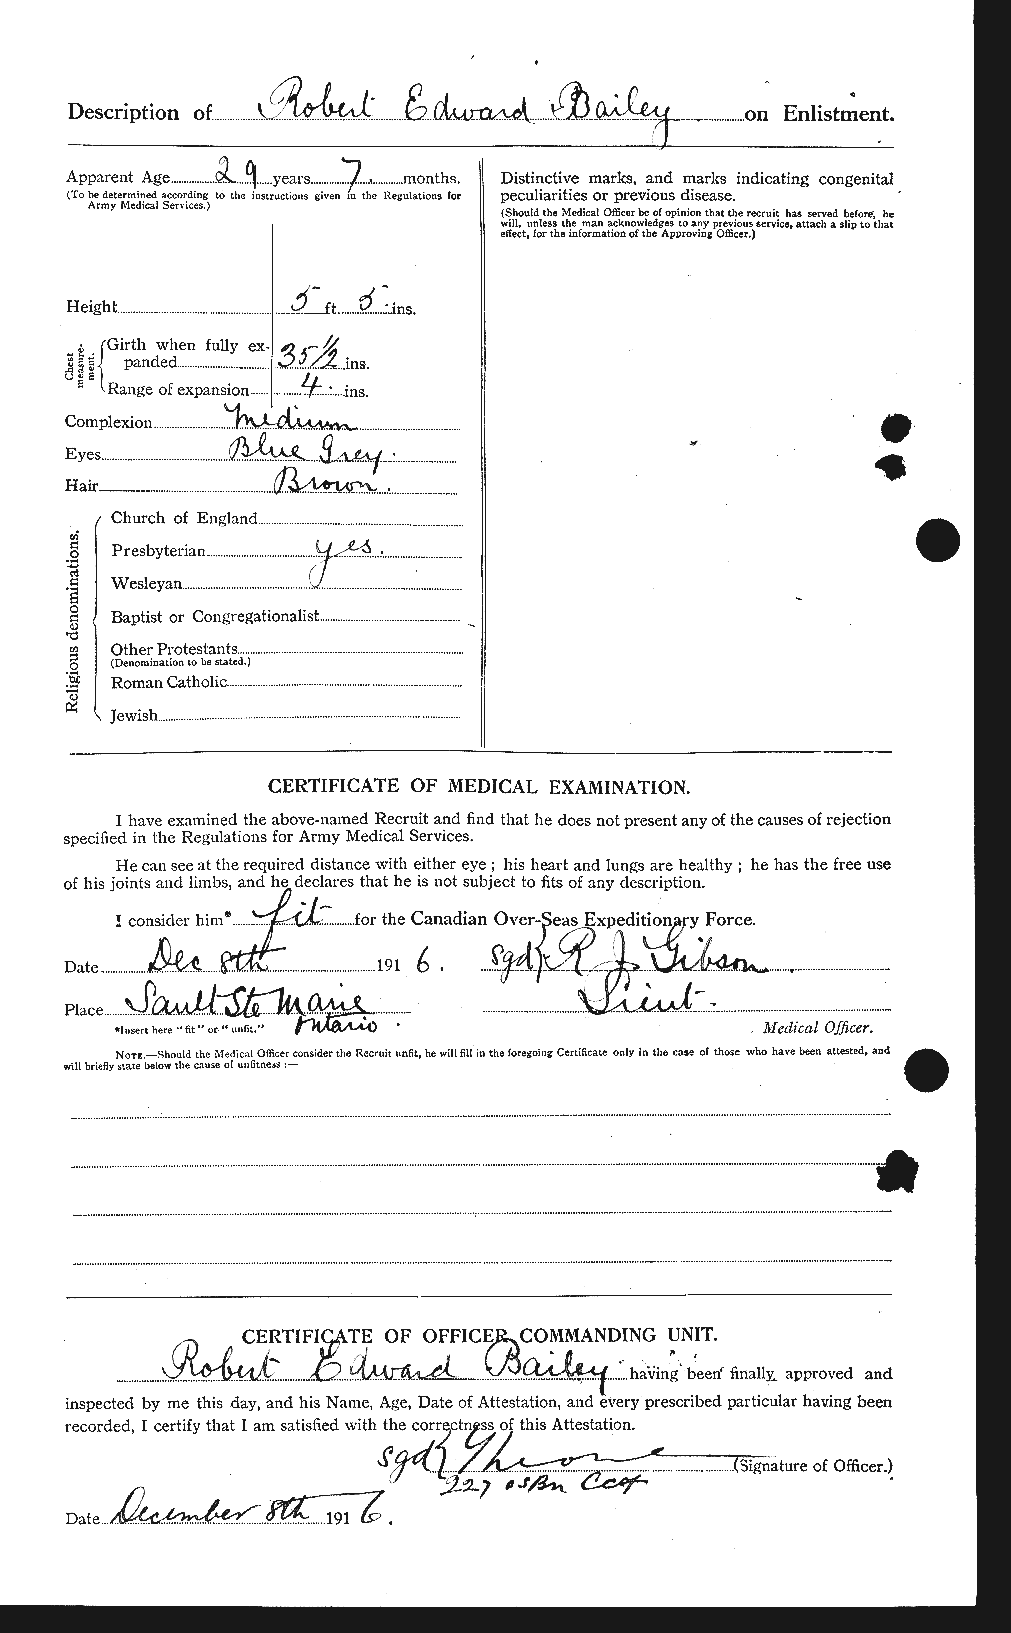 Dossiers du Personnel de la Première Guerre mondiale - CEC 218738b